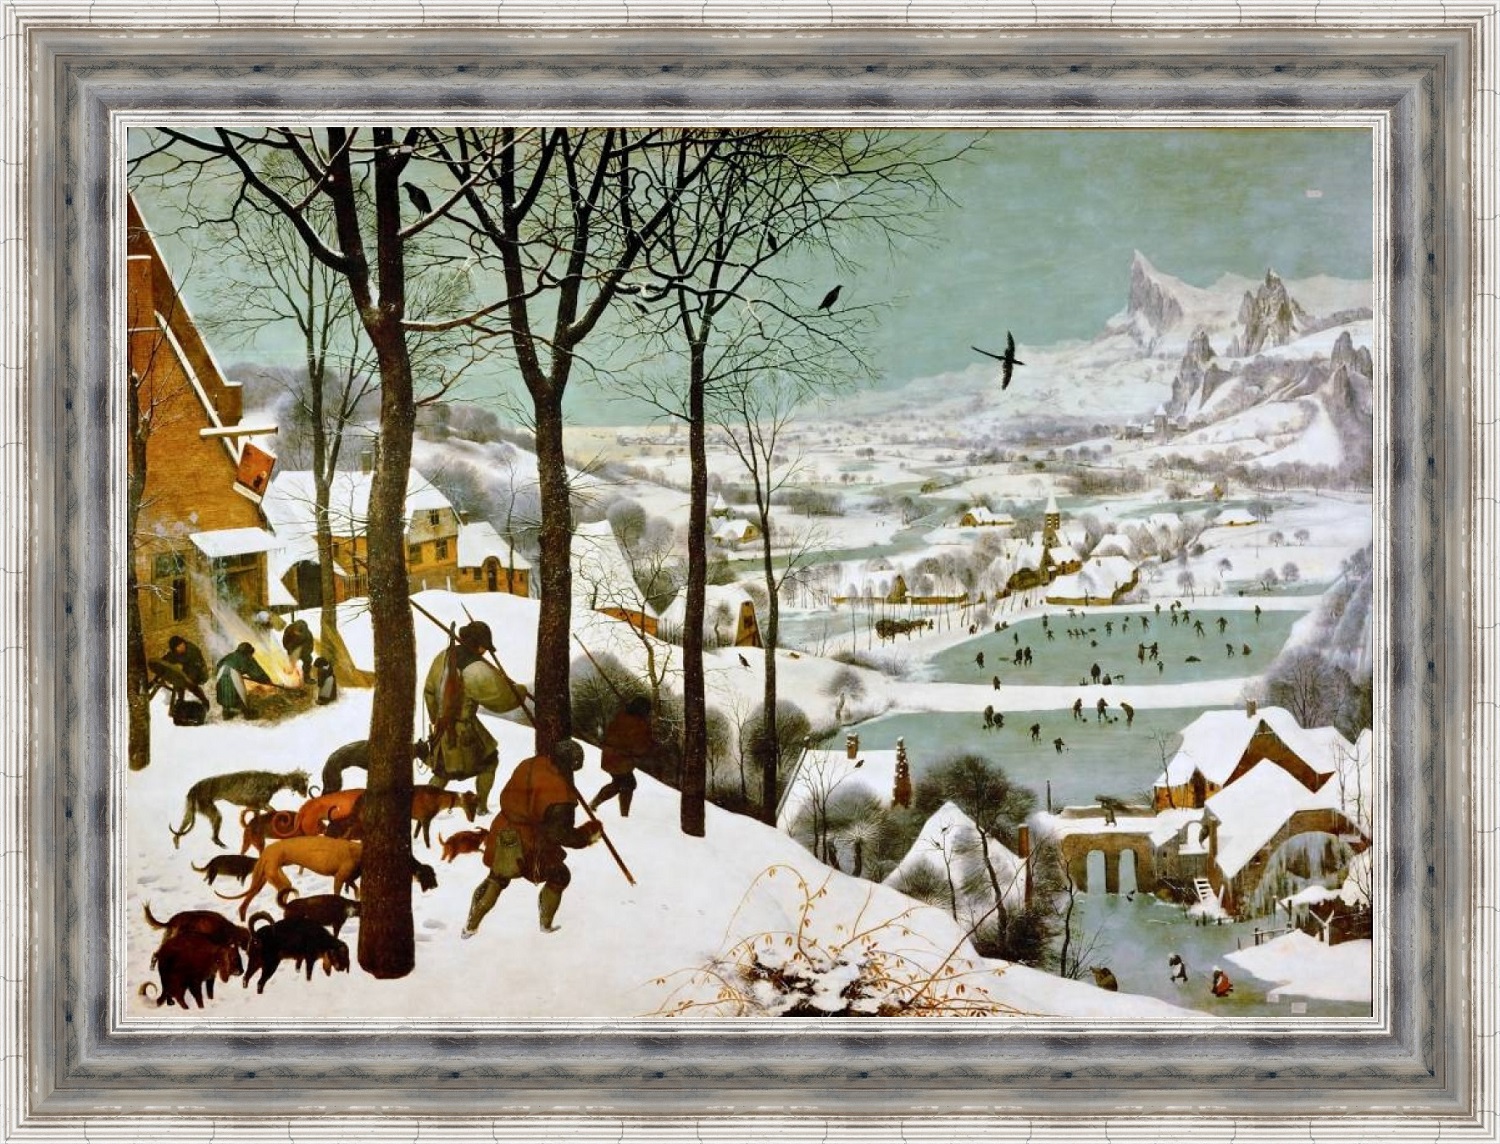 Репродукция картины Питера Брейгеля 'Охотники на снегу' в раме. Вариант 2.
